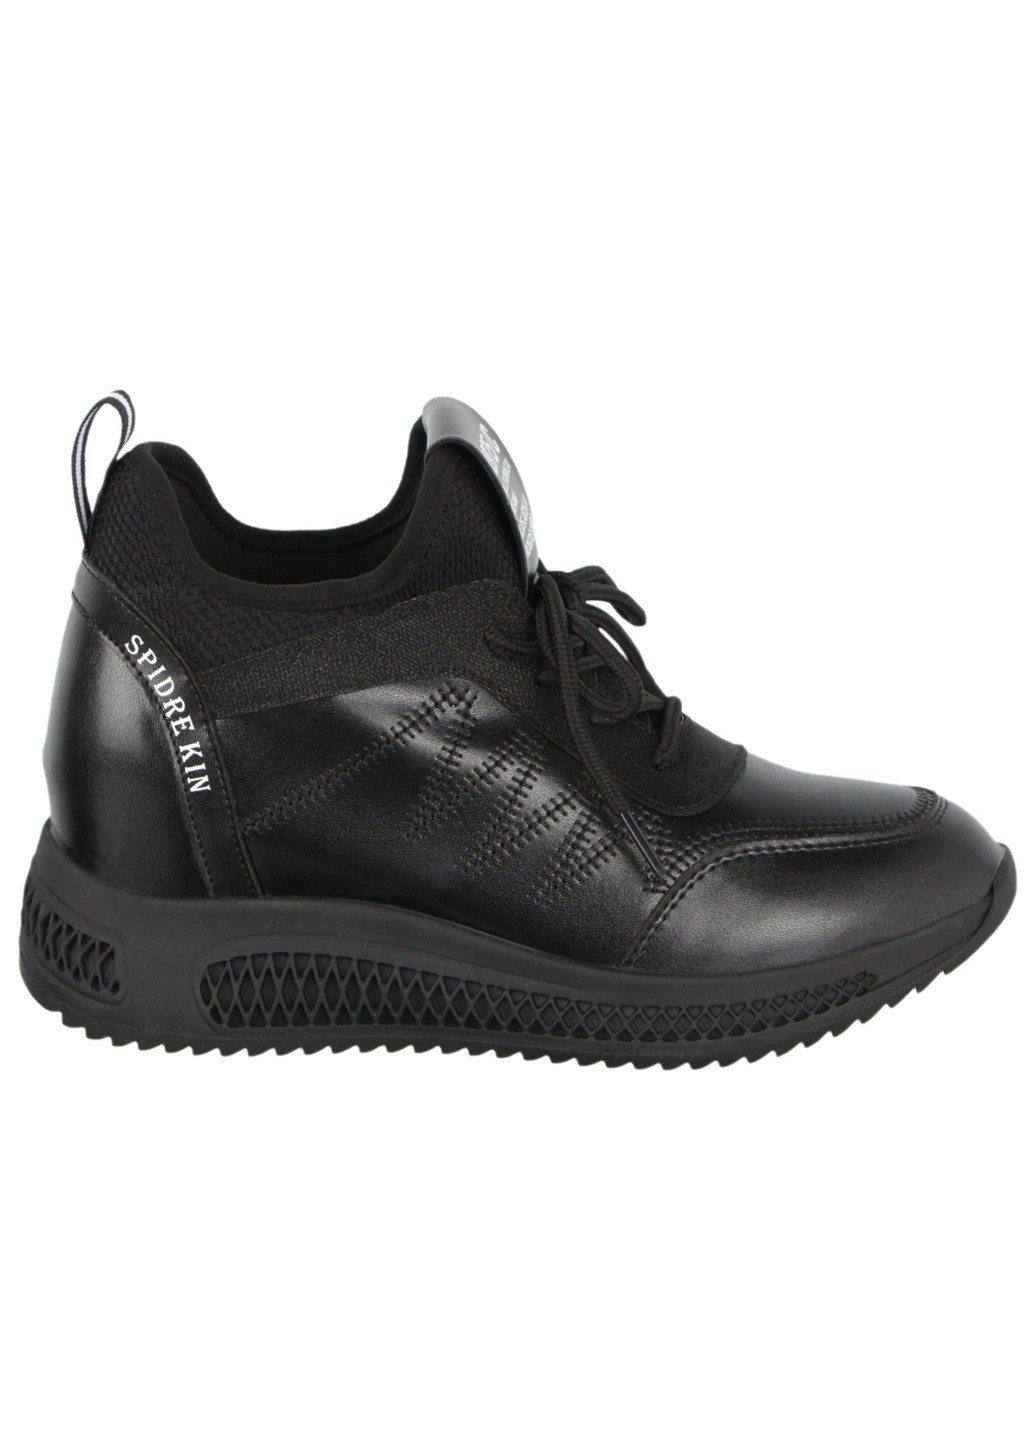 Черные демисезонные жіночі кросівки 198054 Lifexpert